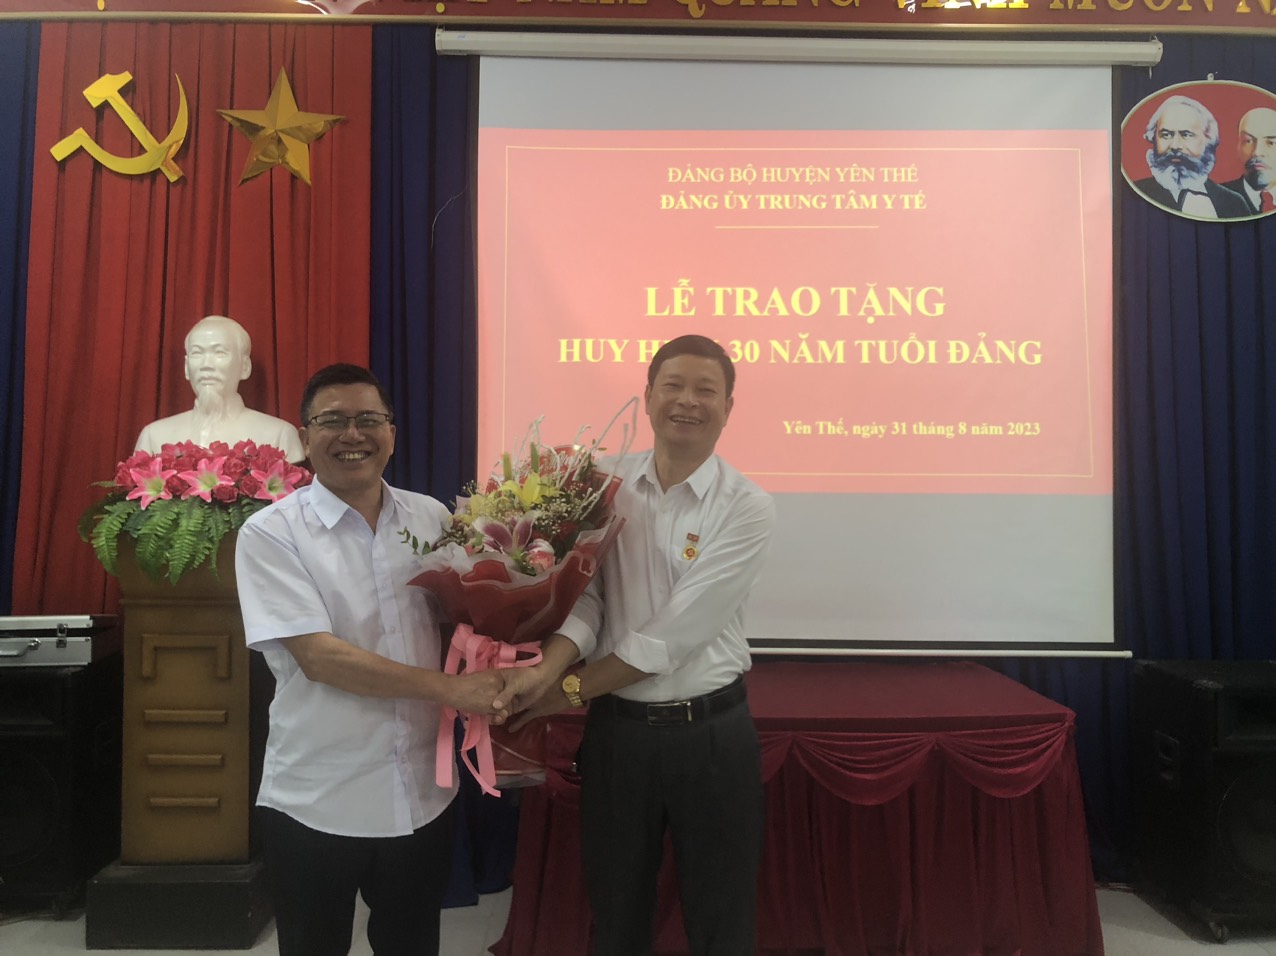 Đảng bộ Trung tâm Y tế Yên Thế tổ chức trao tặng Huy hiệu 30 năm tuổi đảng